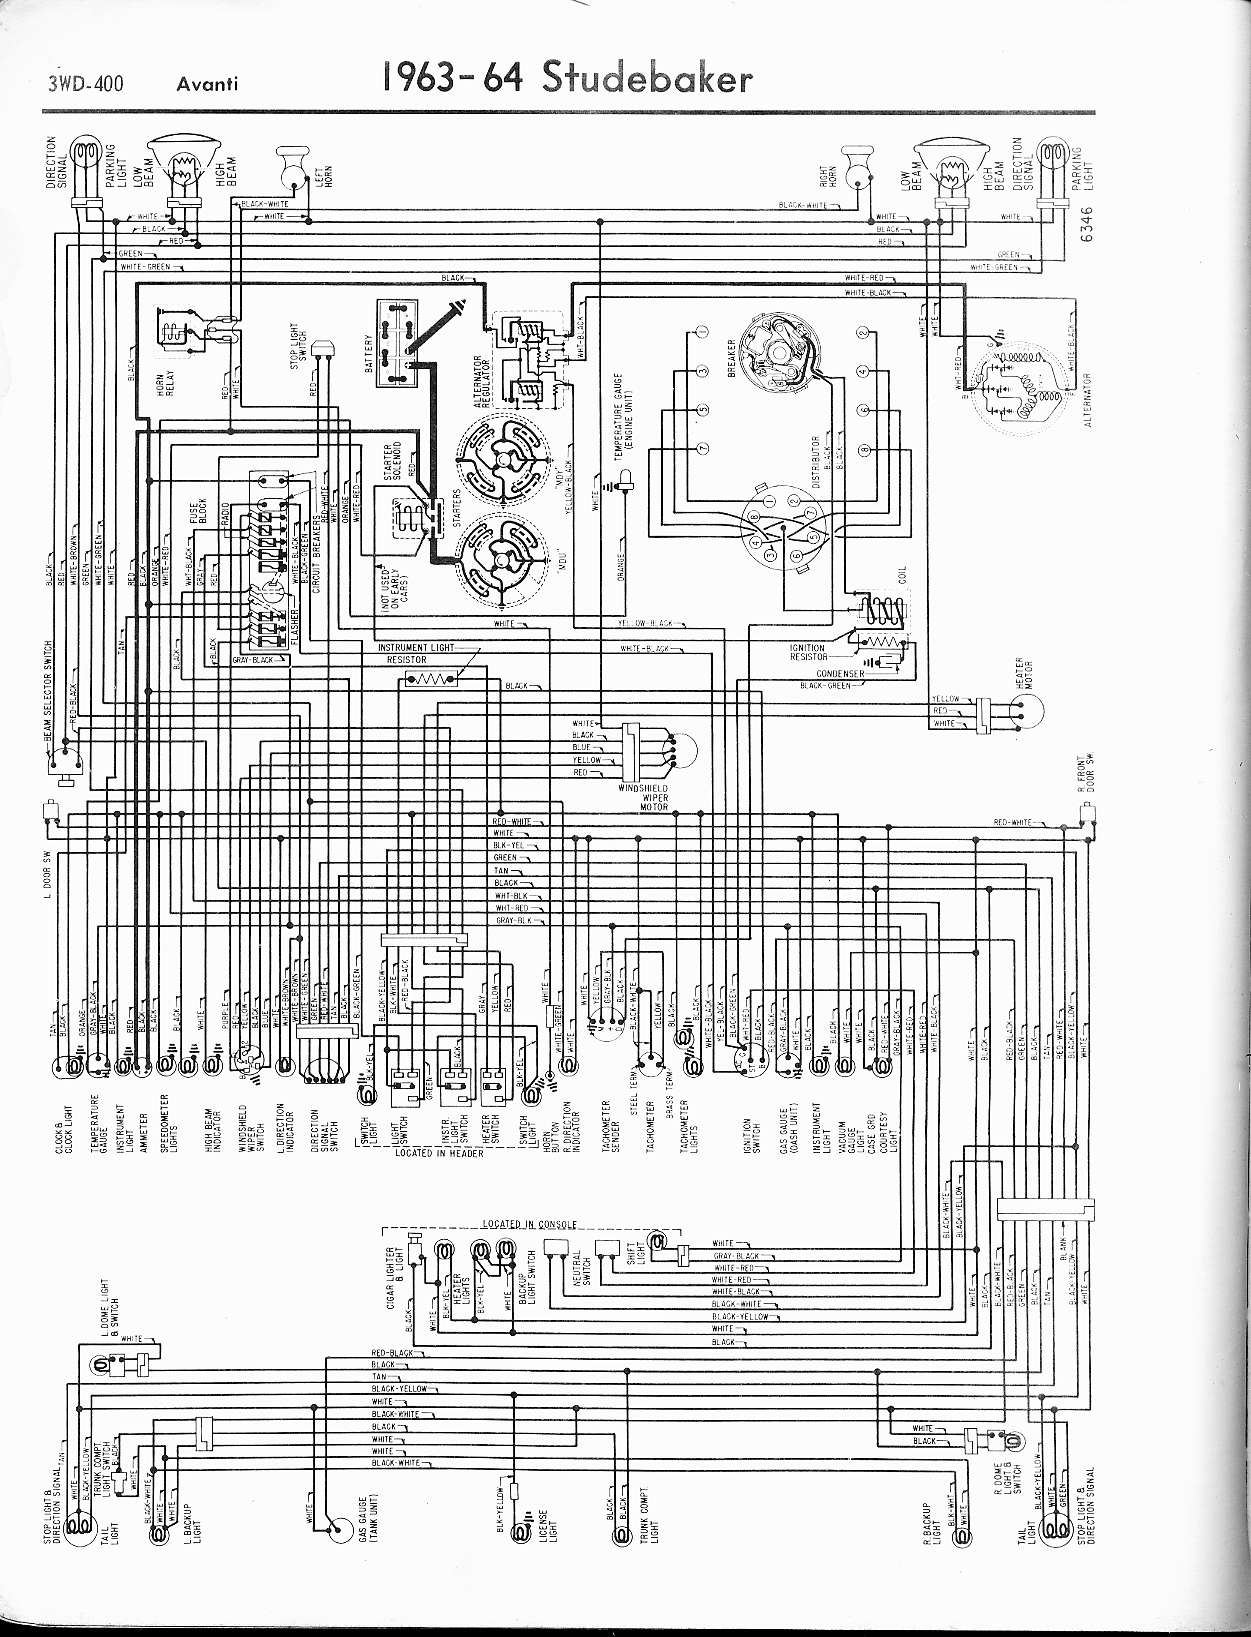 Wiring Manual PDF: 1929 Studebaker Wiring Diagram